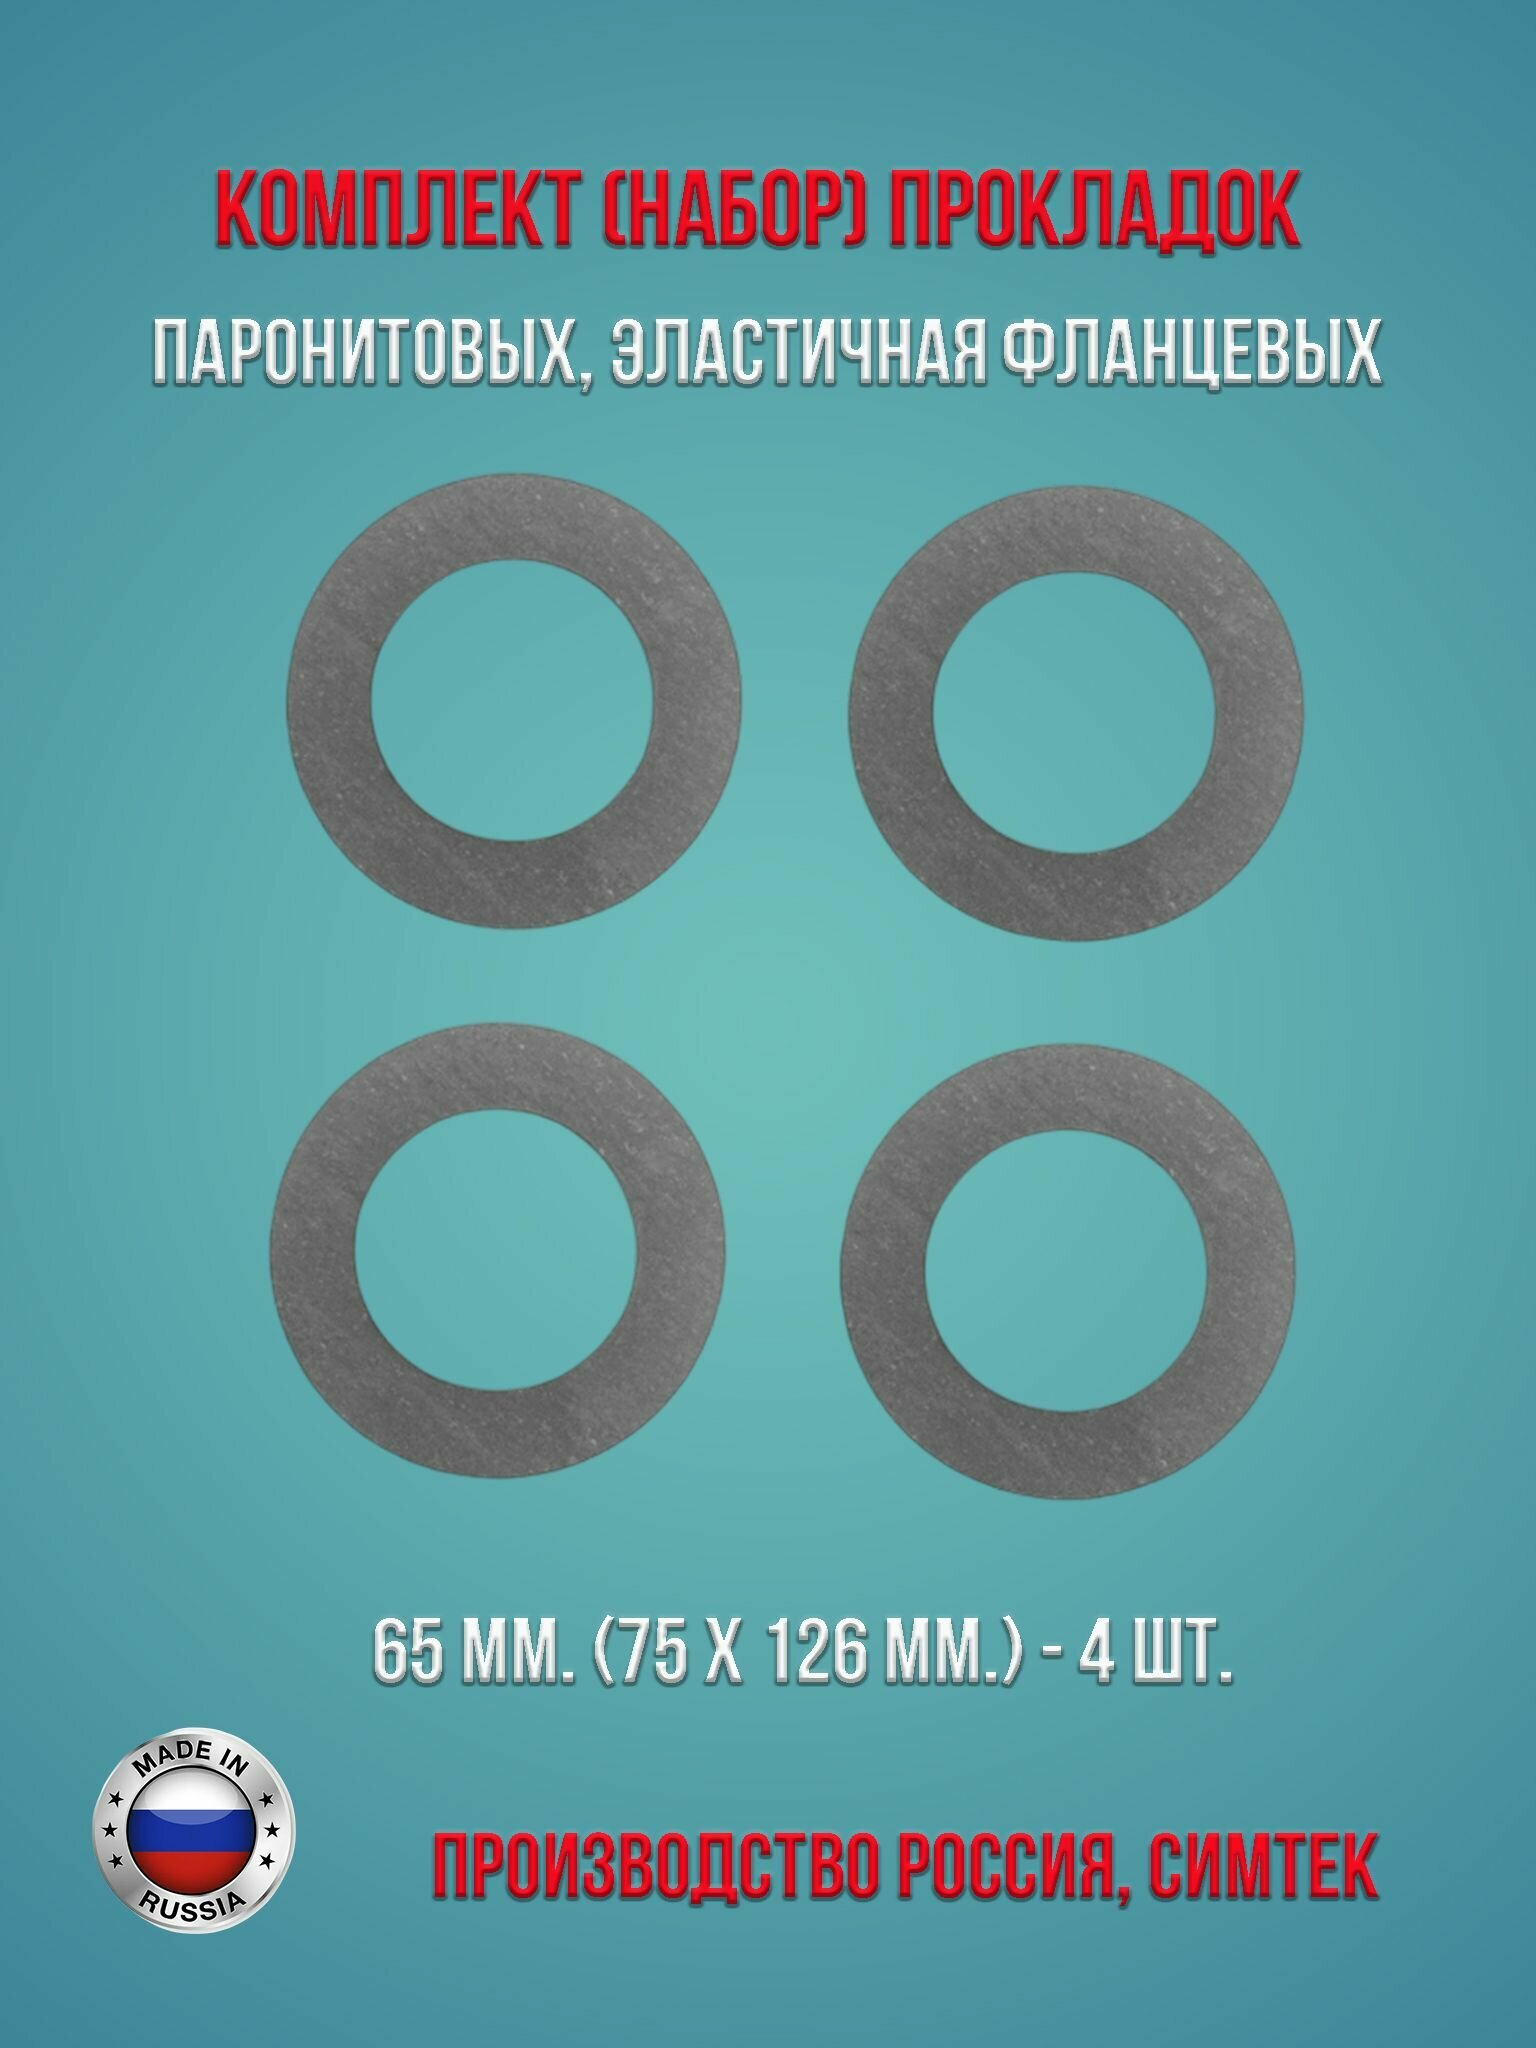 Комплект (набор) паронитовых, эластичная фланцевых прокладок в соответствии с ГОСТ 15180-86 диаметр 65 мм. (75 х 126 мм.), 4 штуки